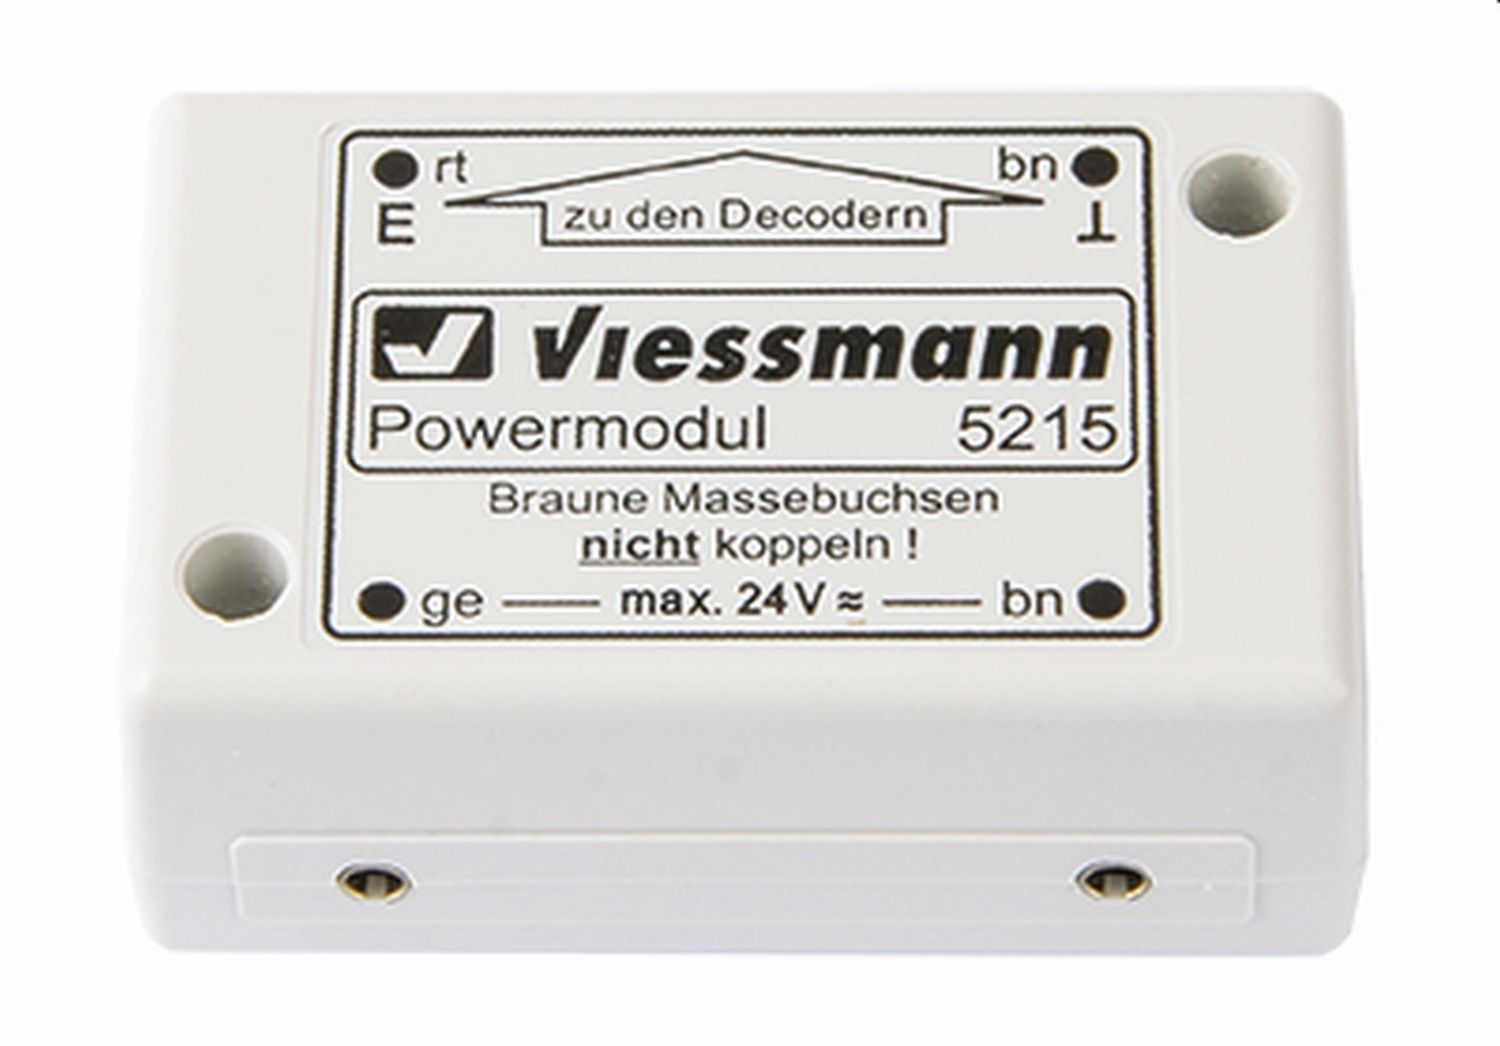 Viessmann 5215 - Powermodul für Decoder